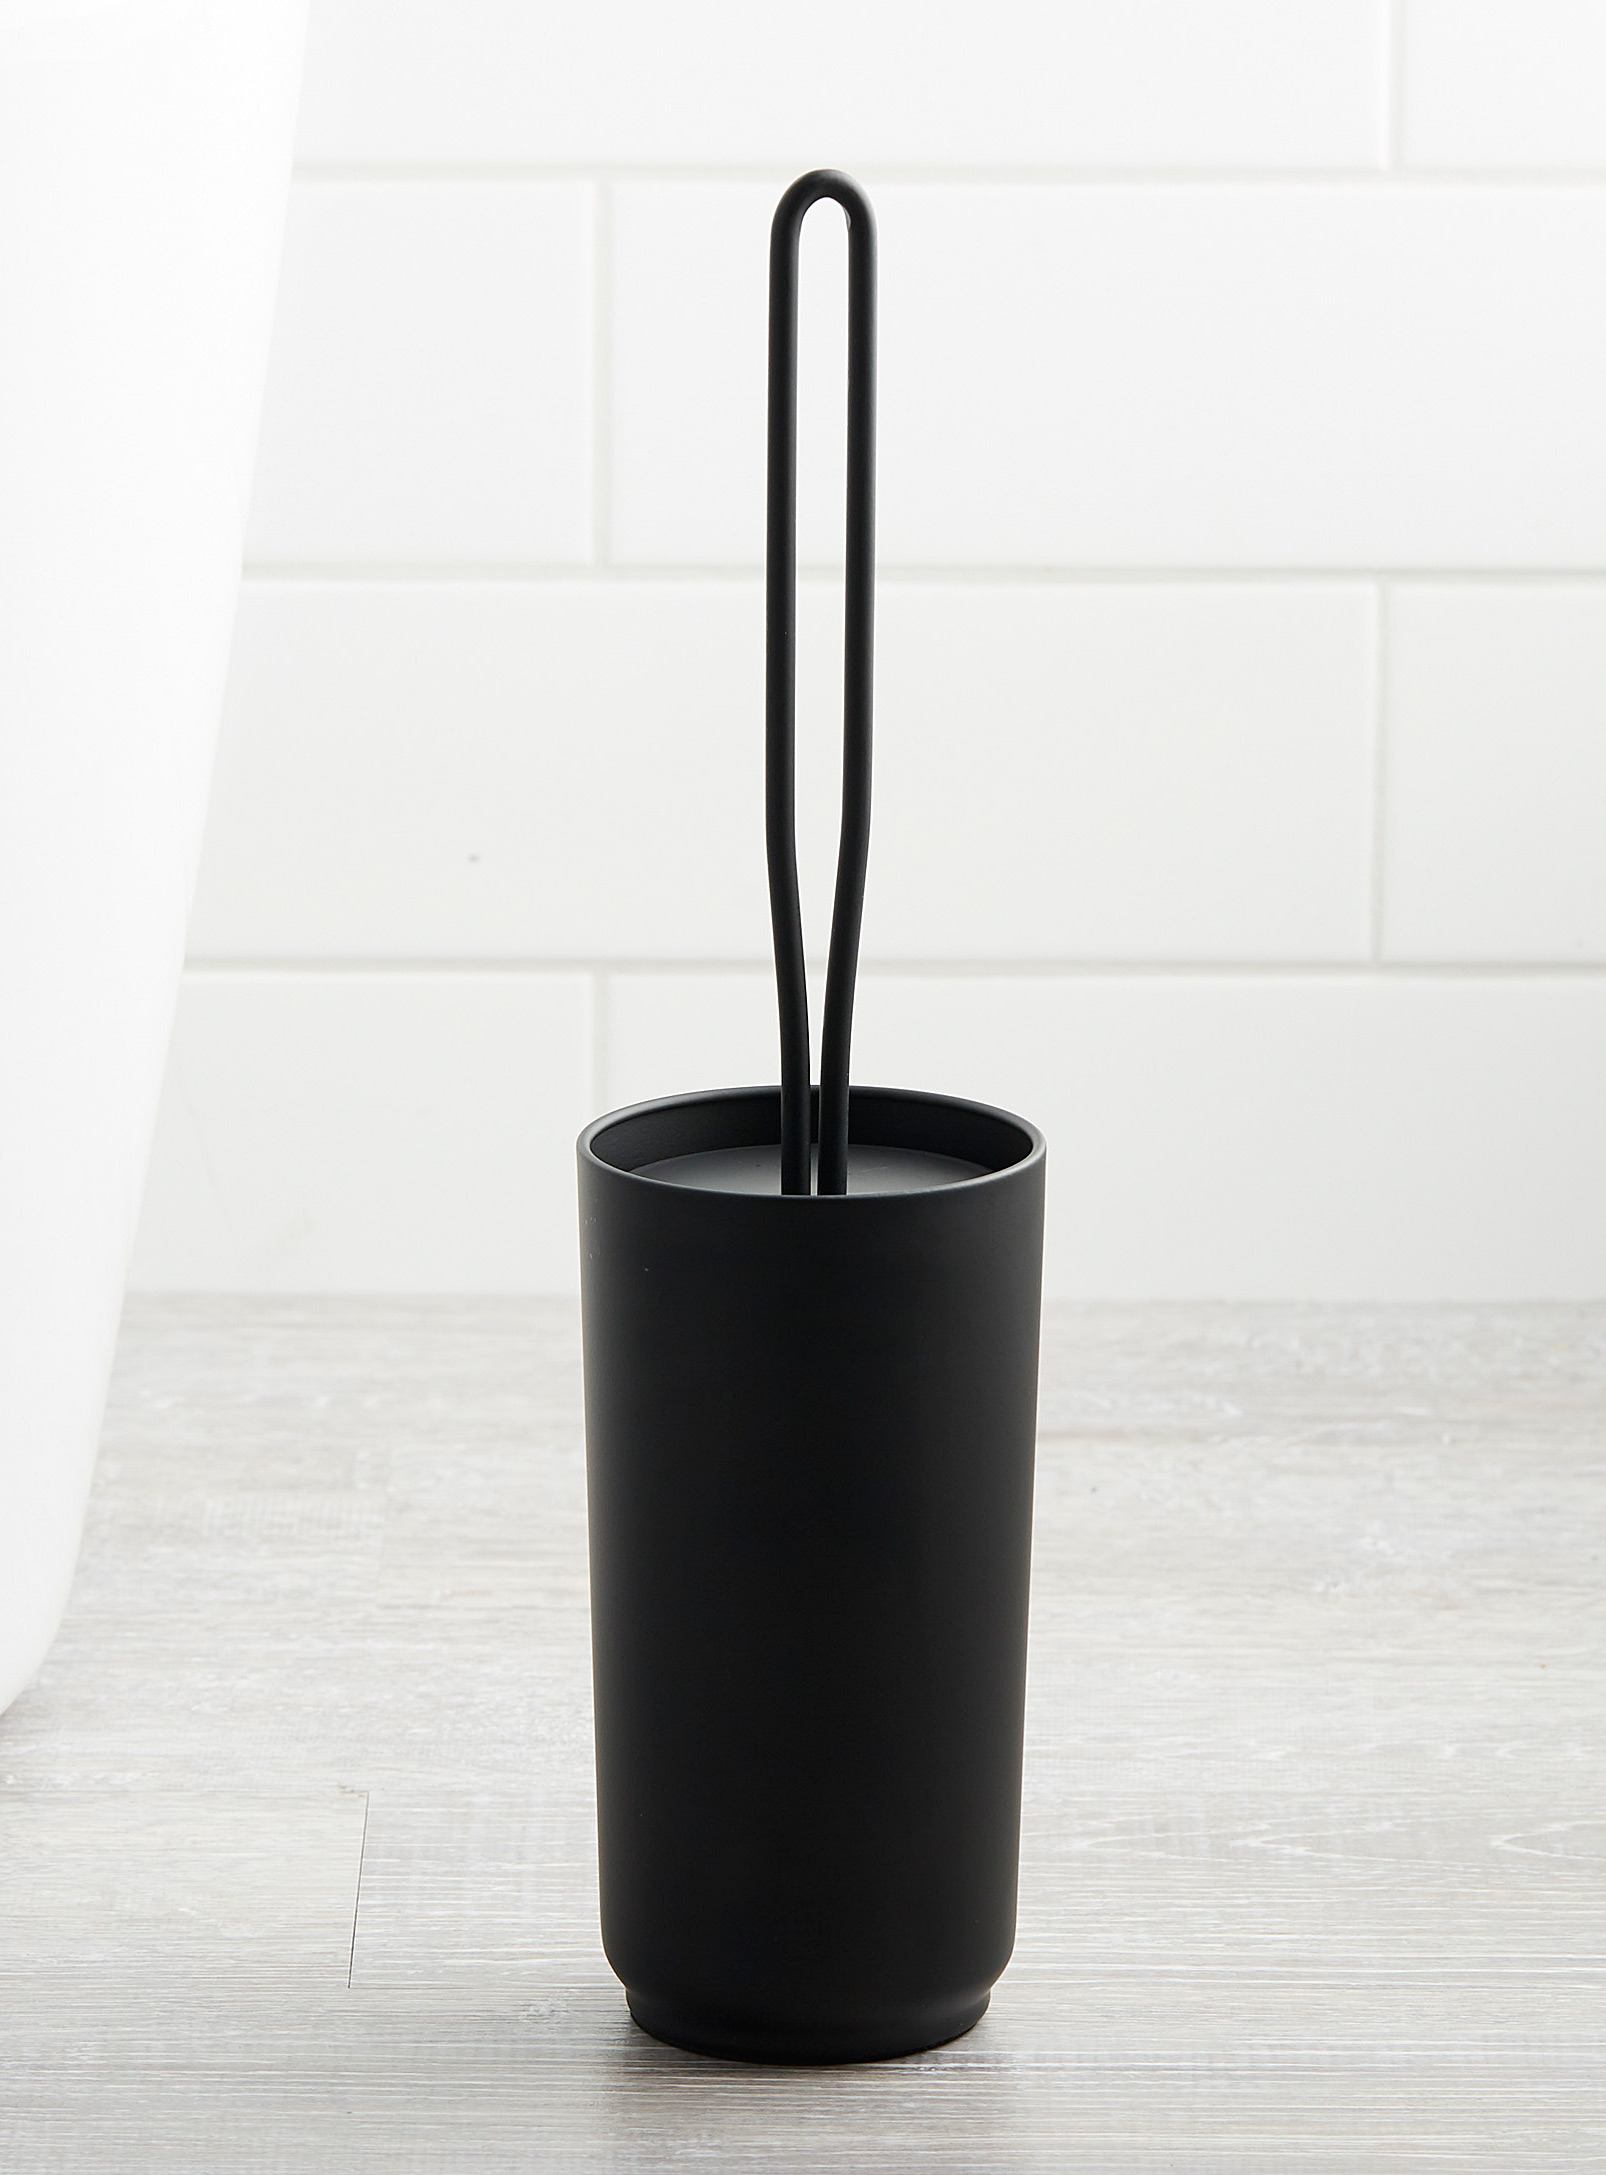 Simons Maison Industrial Toilet Brush In Black